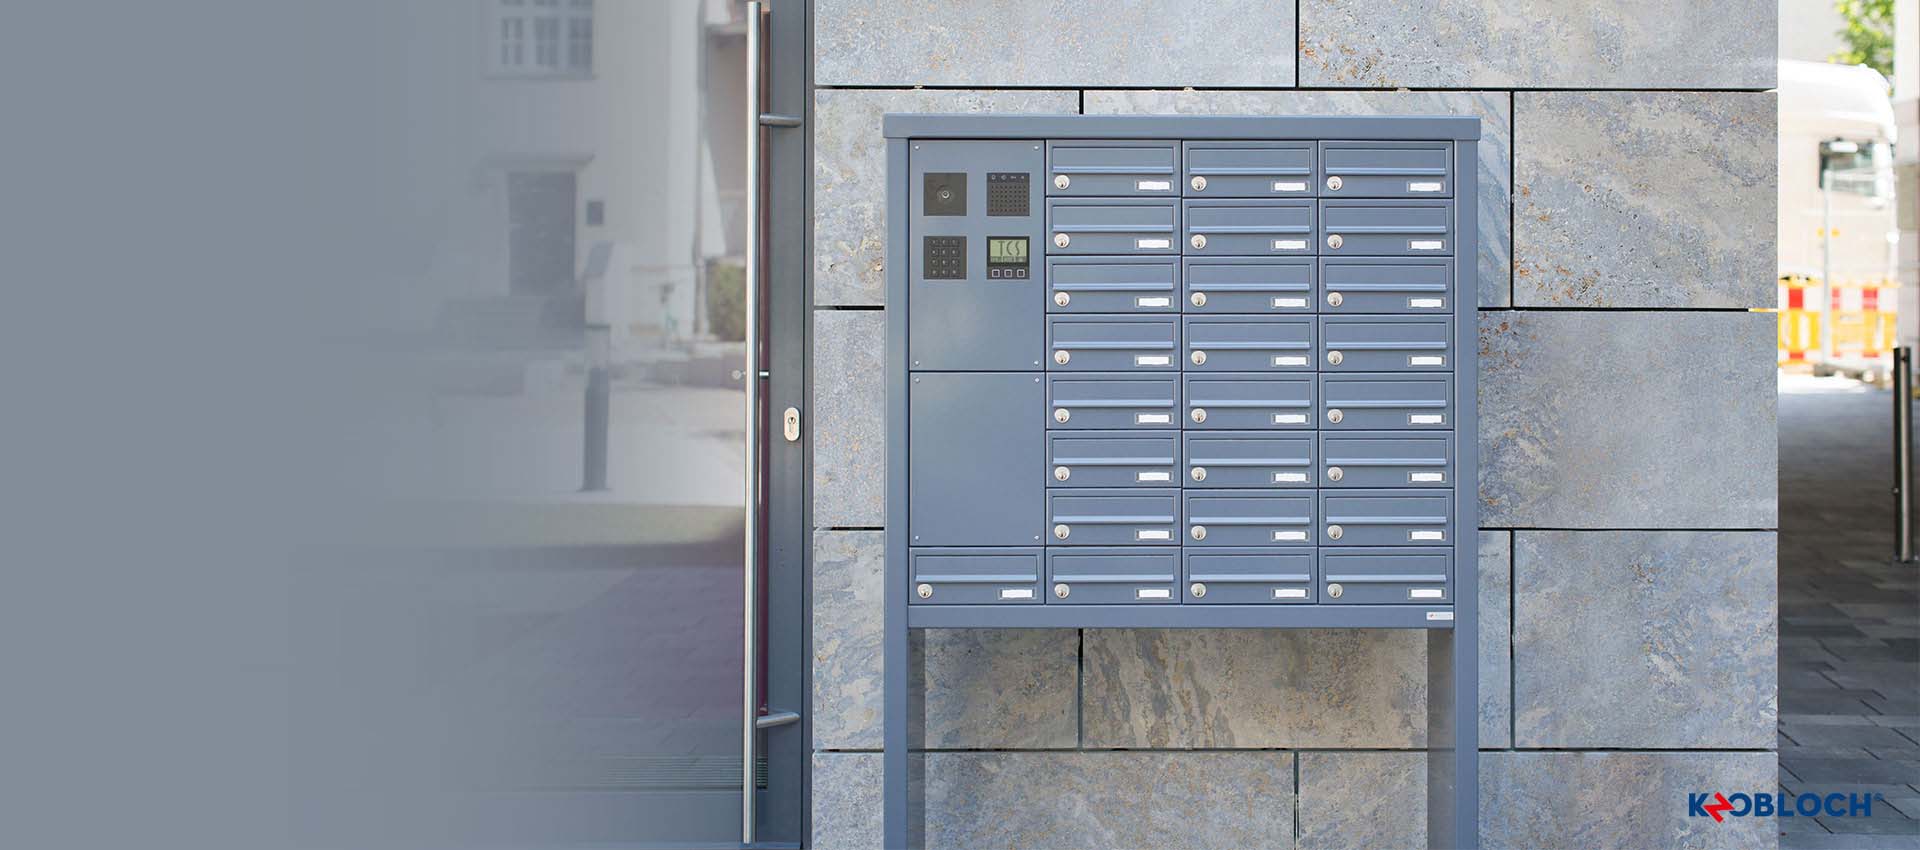 Briefkastenanlage Konfigurator - Konfigurieren Sie Ihre individuelle Wunsch KNOBLOCH Briefkastenanlagen Online